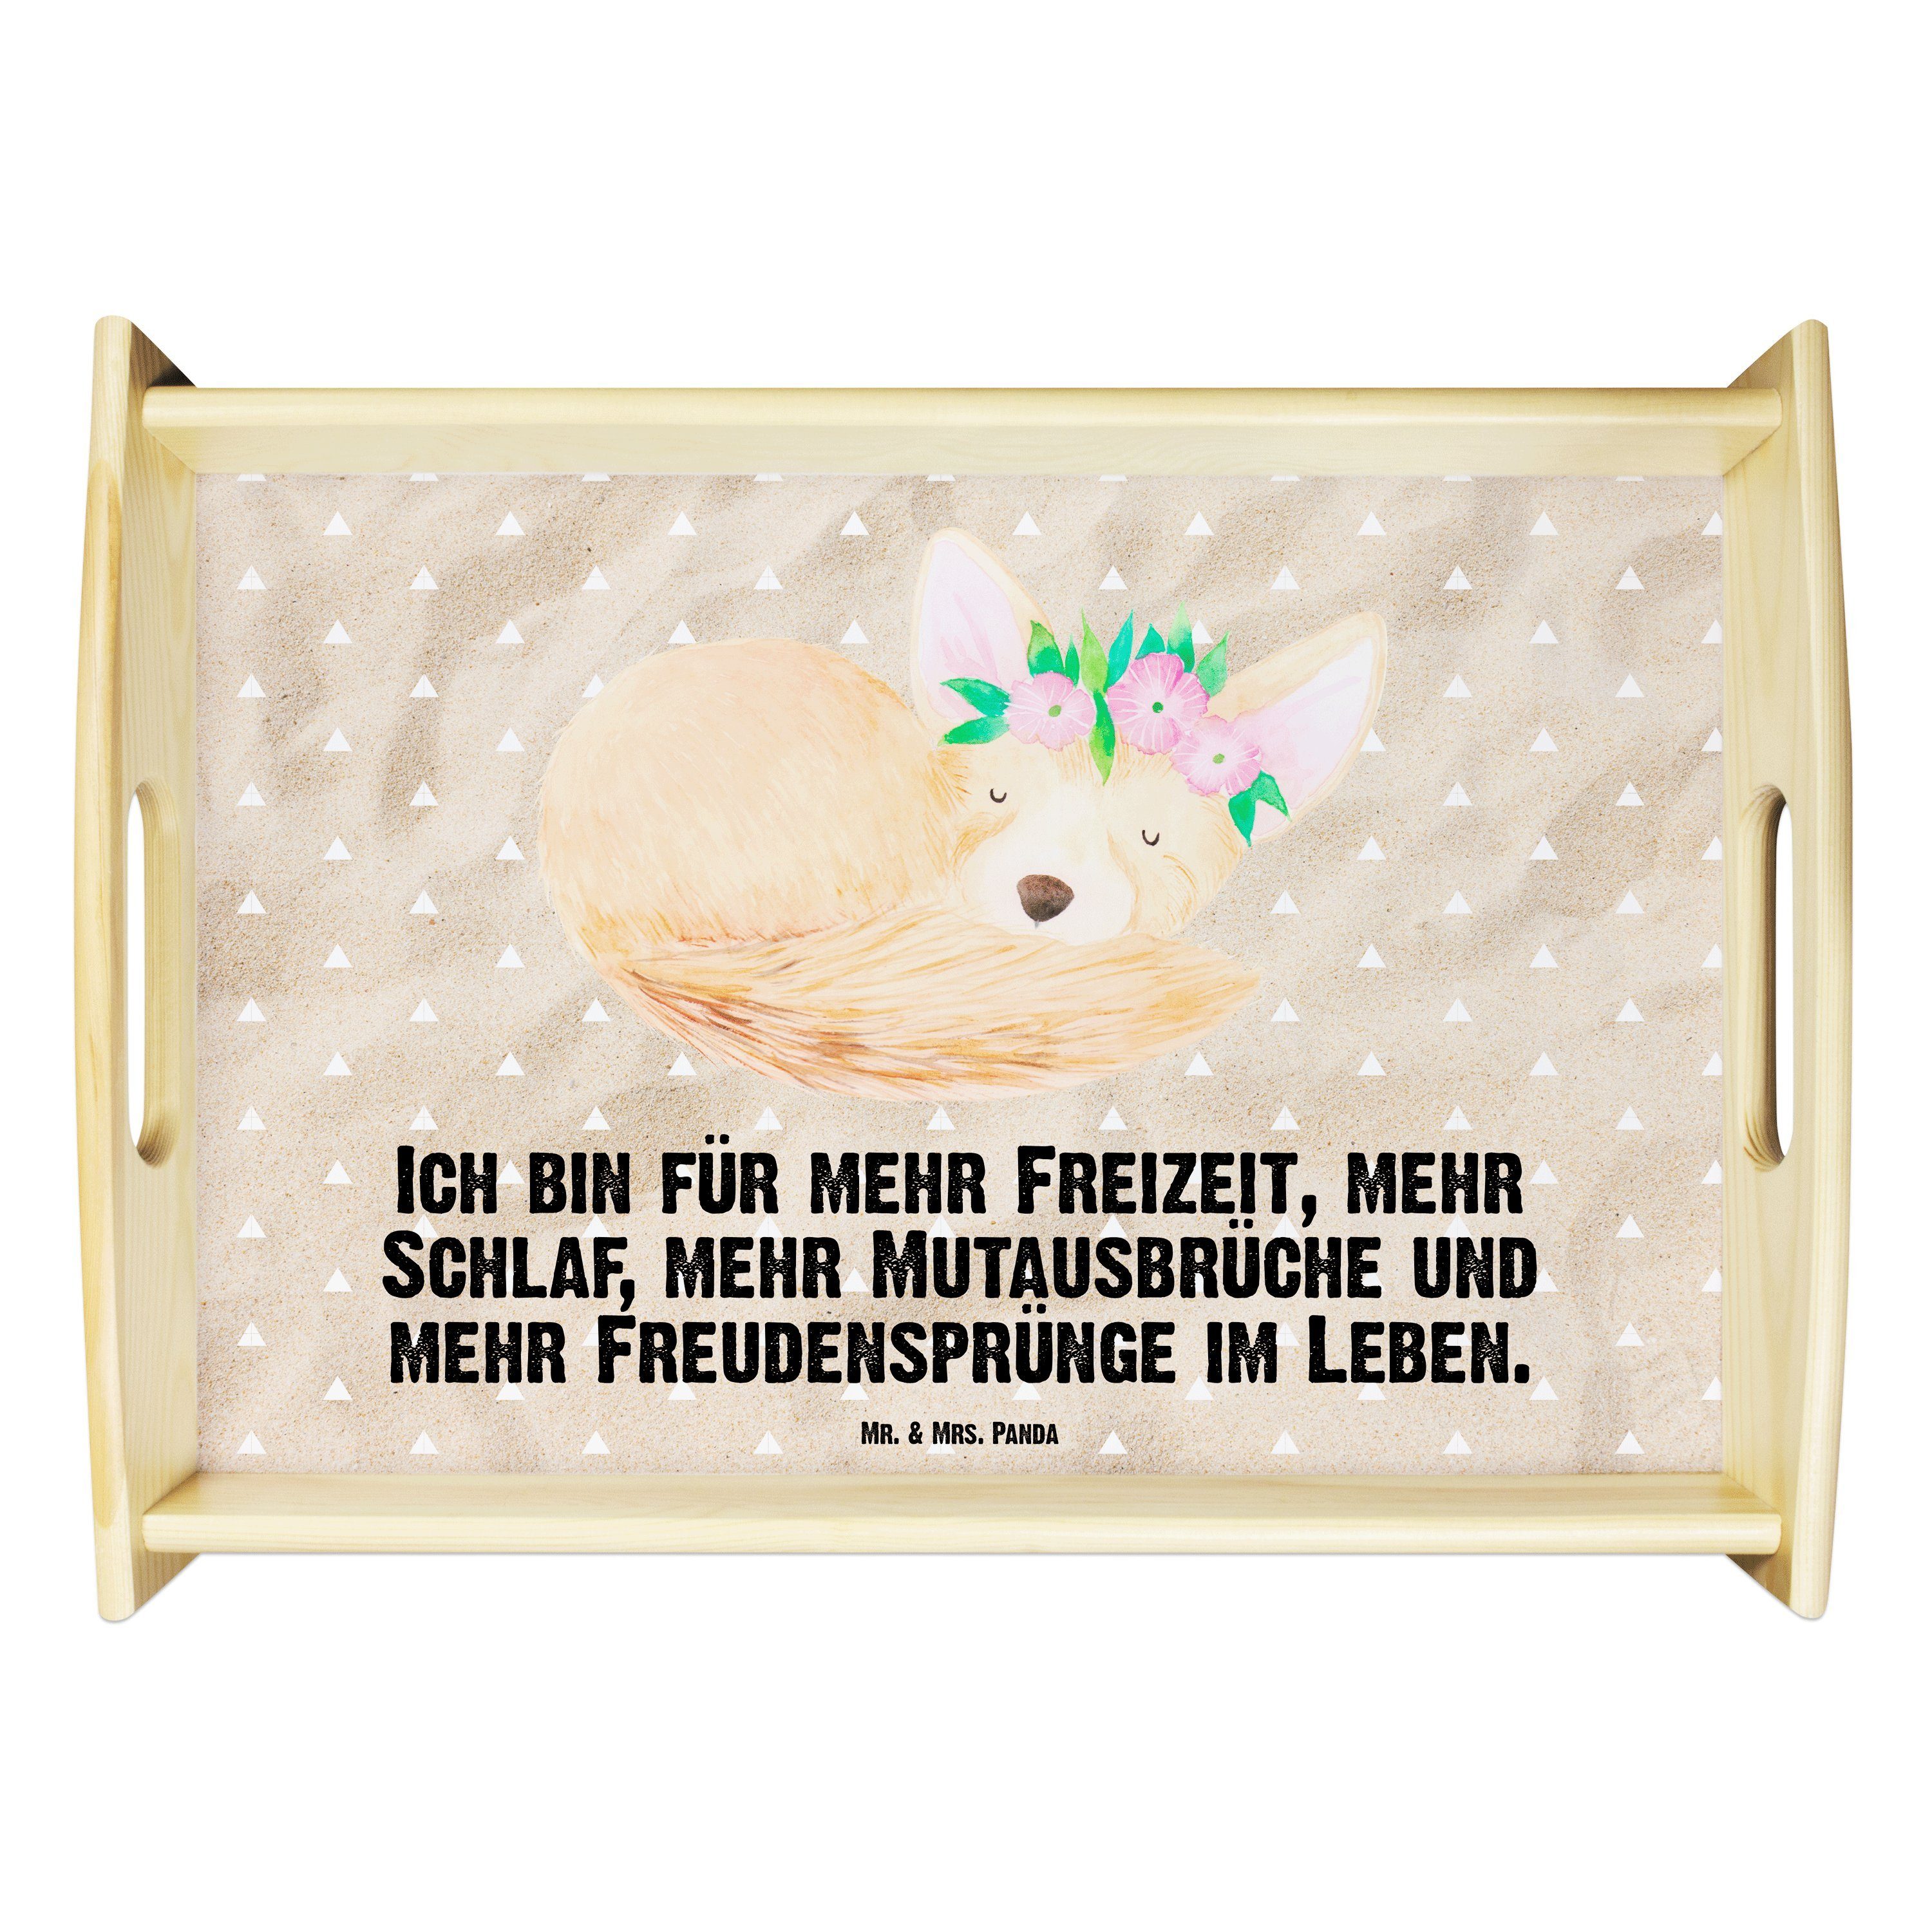 Mr. & Mrs. Panda Tablett Wüstenfuchs Blumenkranz - Sandig - Geschenk, Dekotablett, Wildtiere, Echtholz lasiert, (1-tlg)